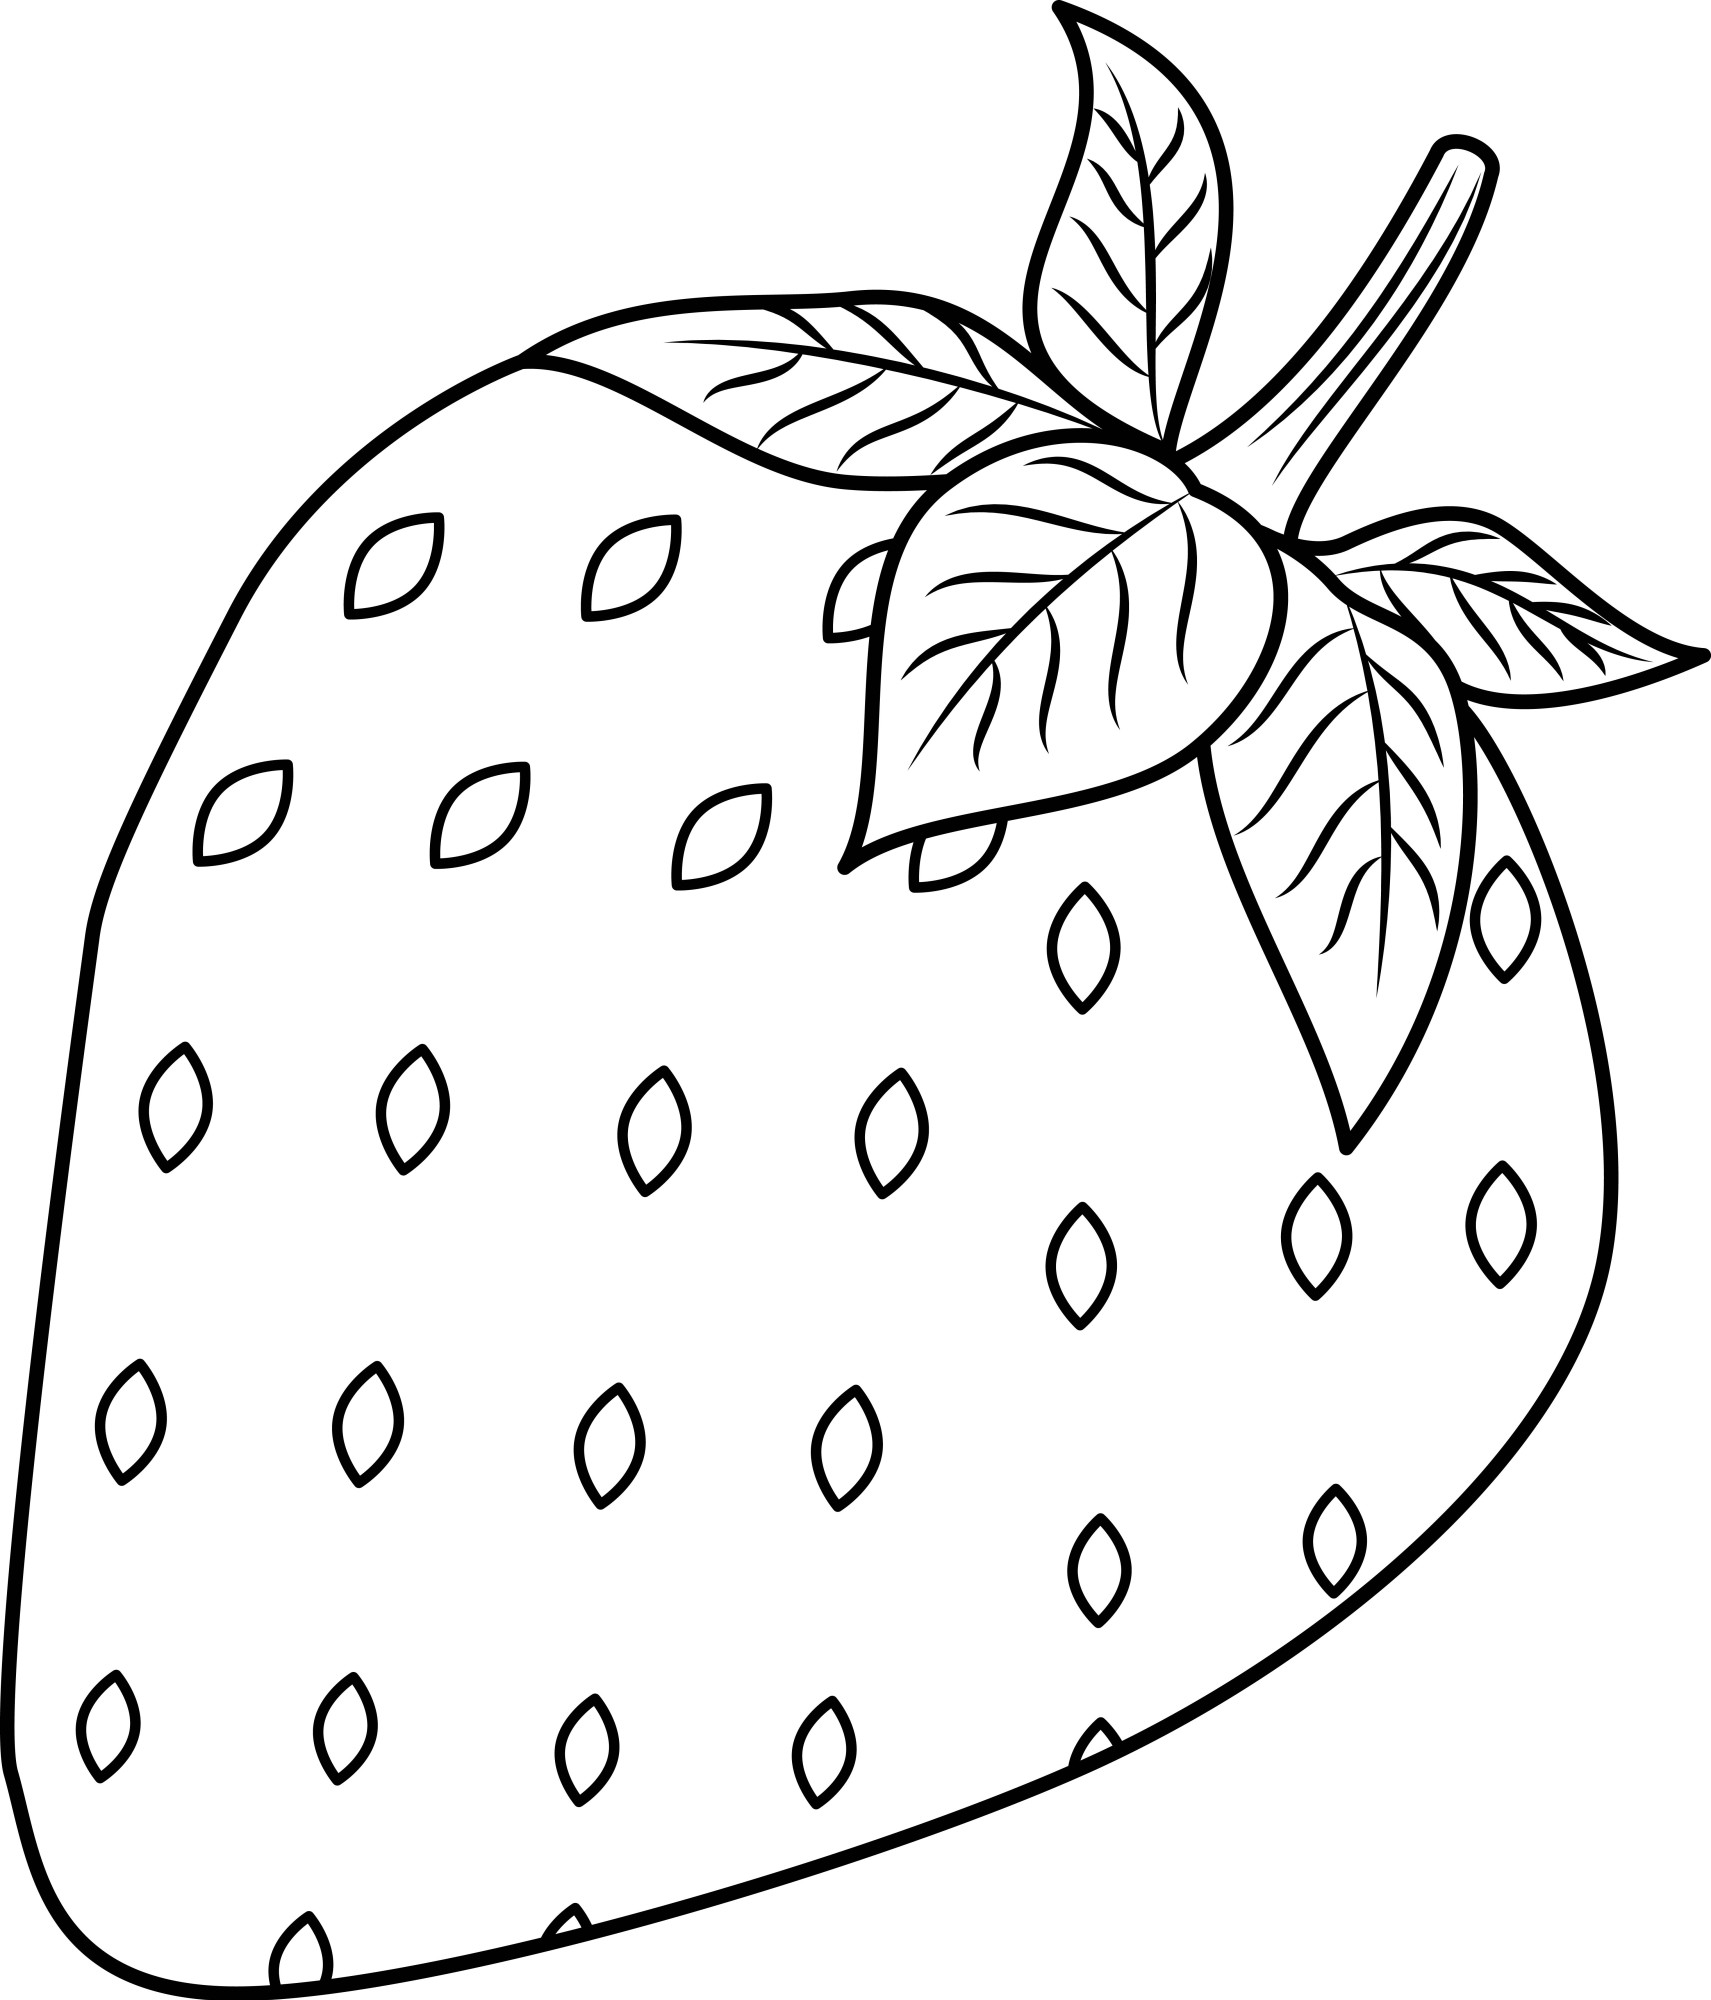 Раскраска для детей: большая ягодка клубники